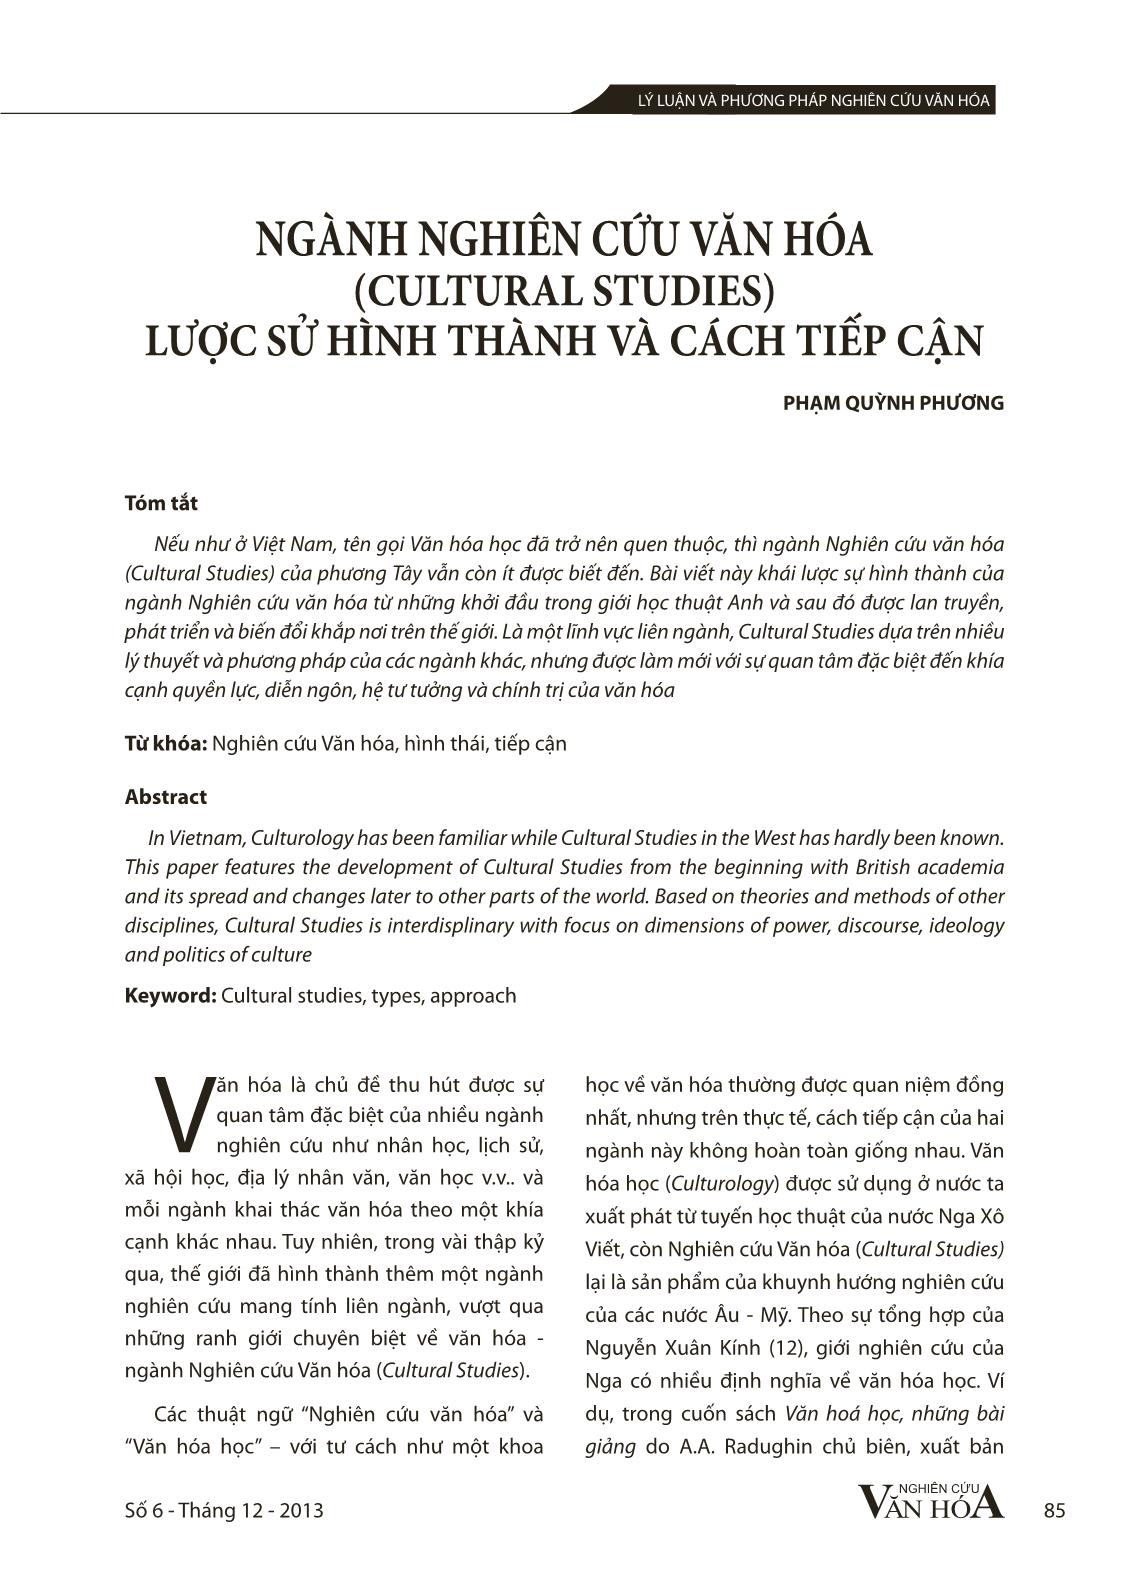 Ngành nghiên cứu văn hóa (Cultural Studies) lược sử hình thành và cách tiếp cận trang 1